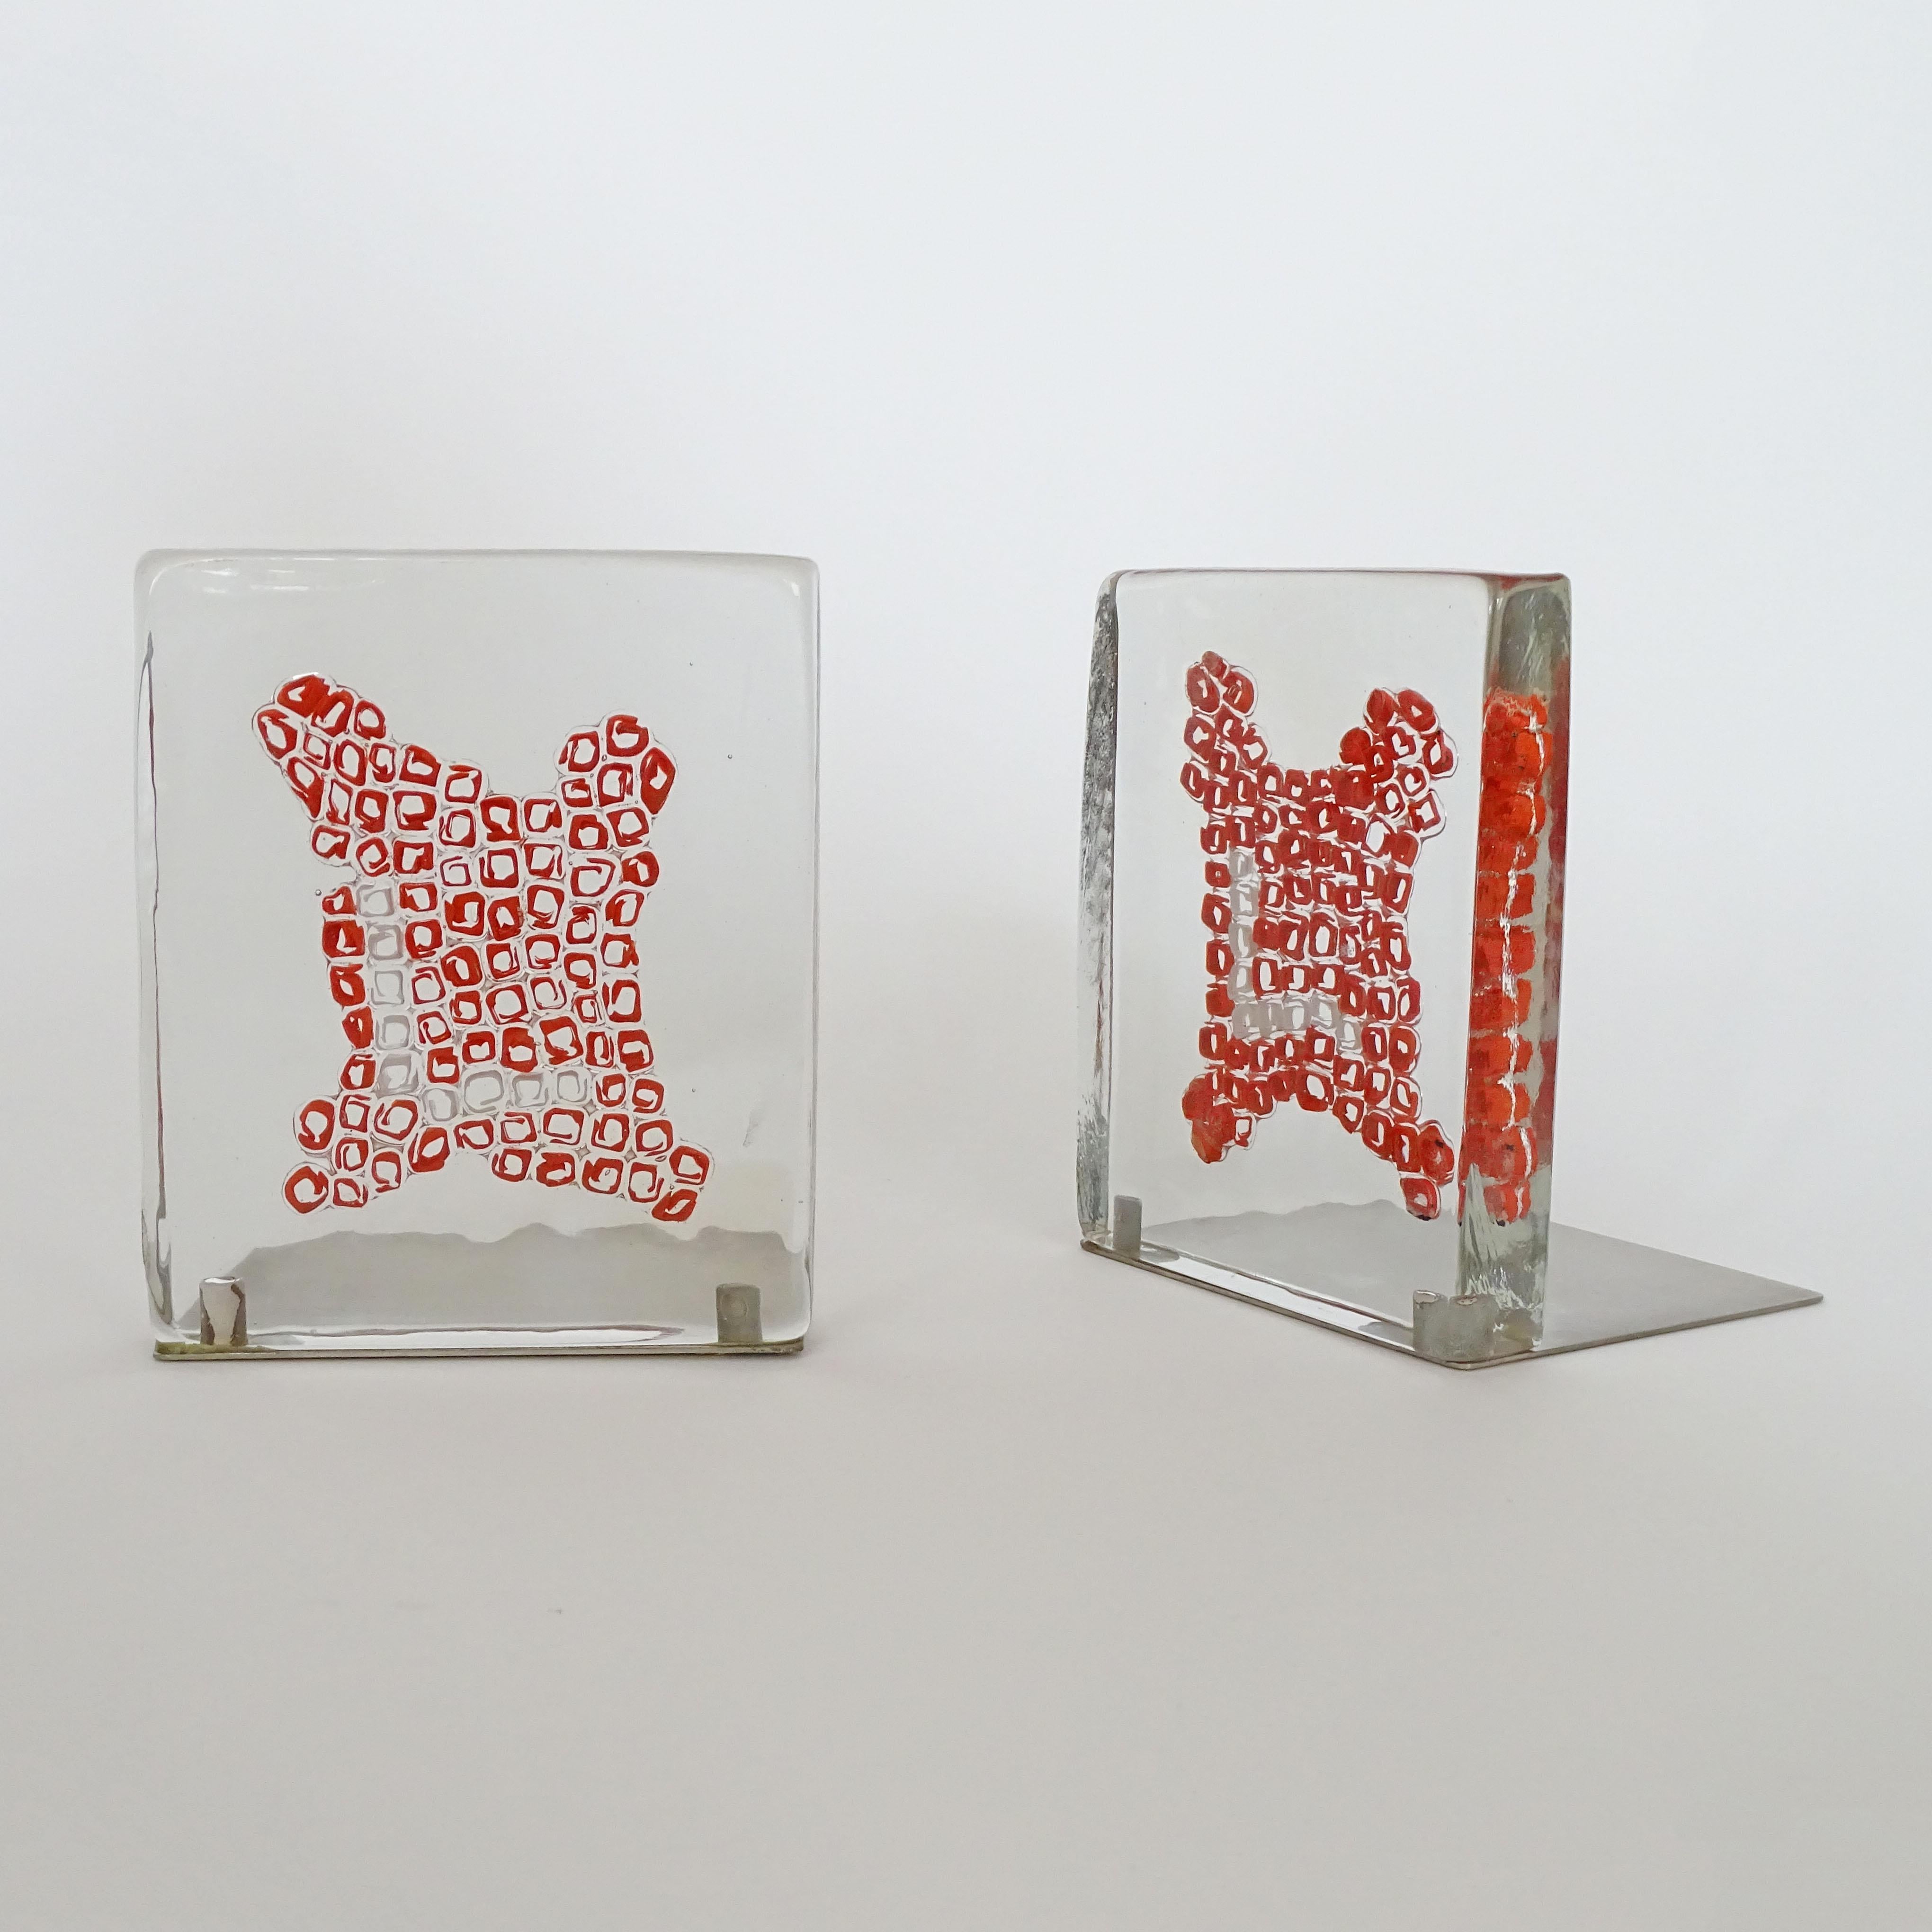 Venini Murano Glass Book Ends with Red and White Murrine, Italy 1969
Reference: Catalogo Ragionato Venini